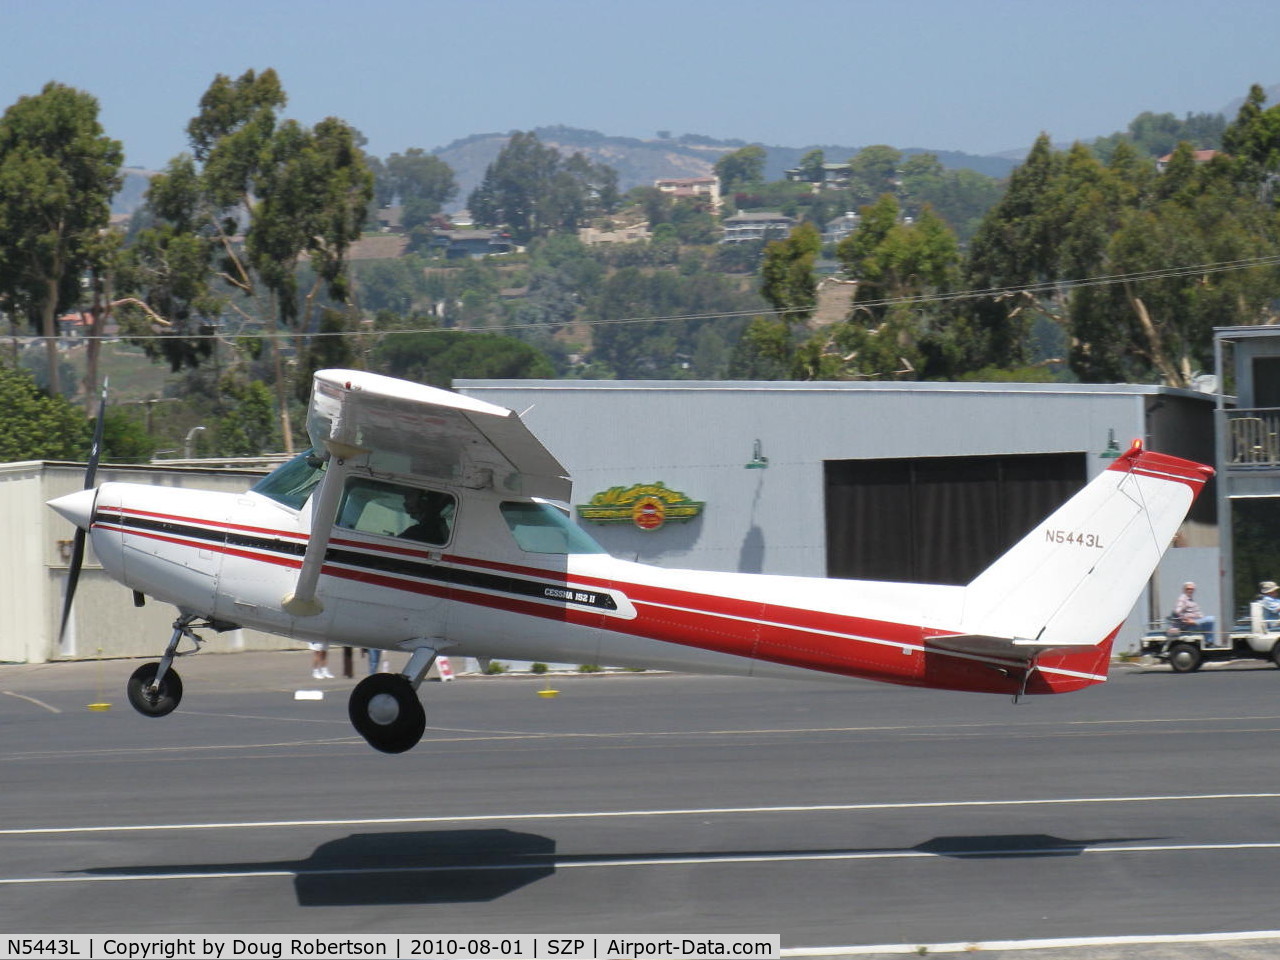 N5443L, 1980 Cessna 152 C/N 15284315, 1980 Cessna 152 II, Lycoming O-235 110 Hp, takeoff climb Rwy 22